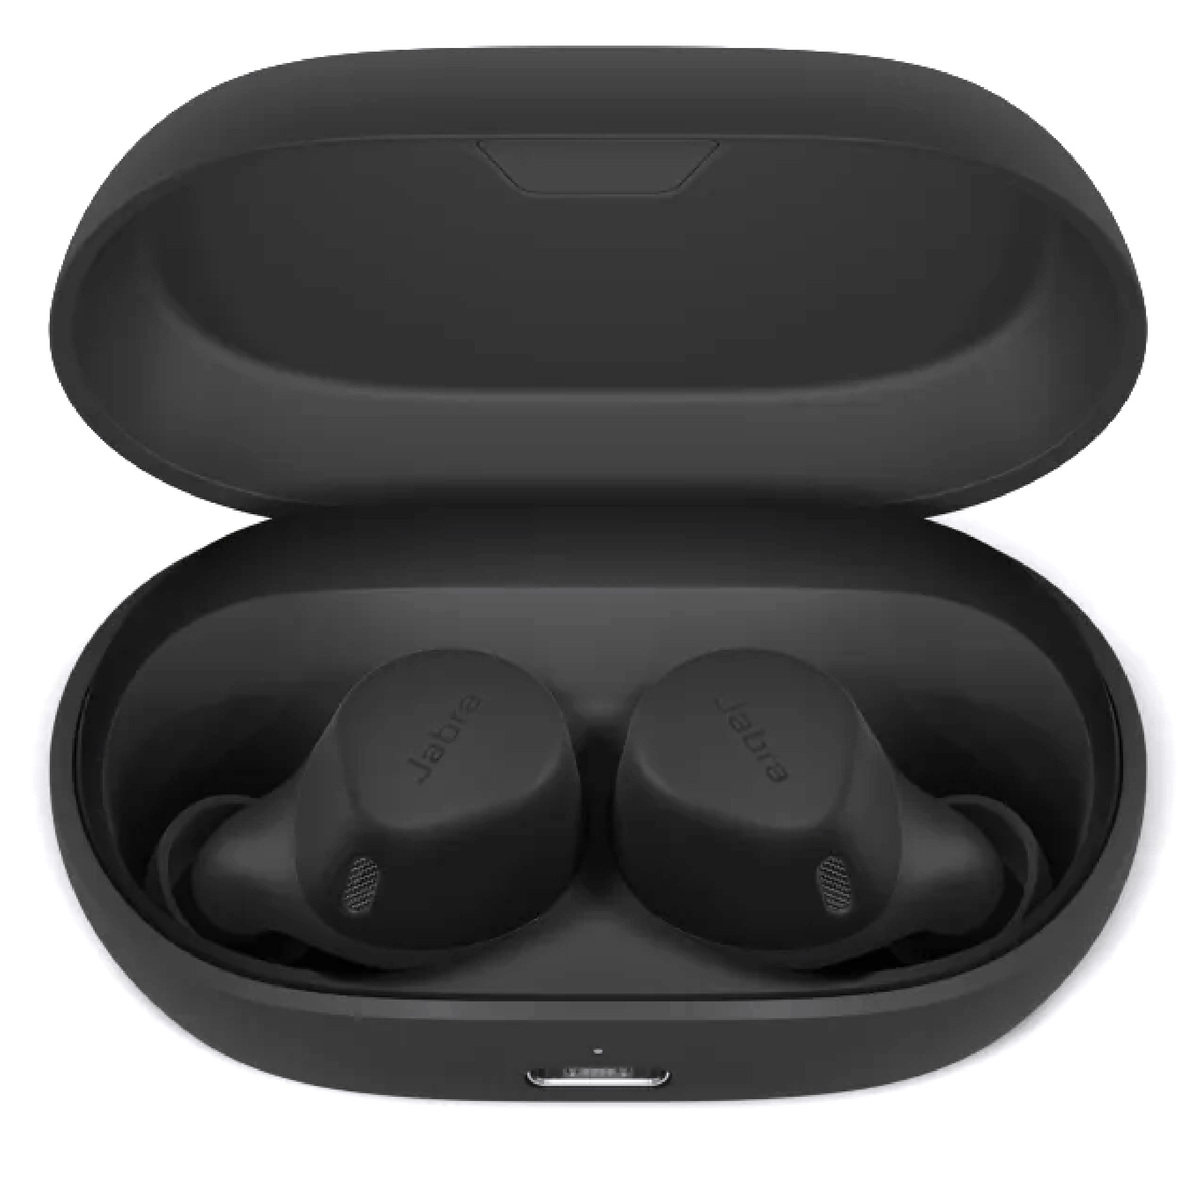 Jabra Elite 7 Active True Wireless In-Ear ANC Earbuds Black